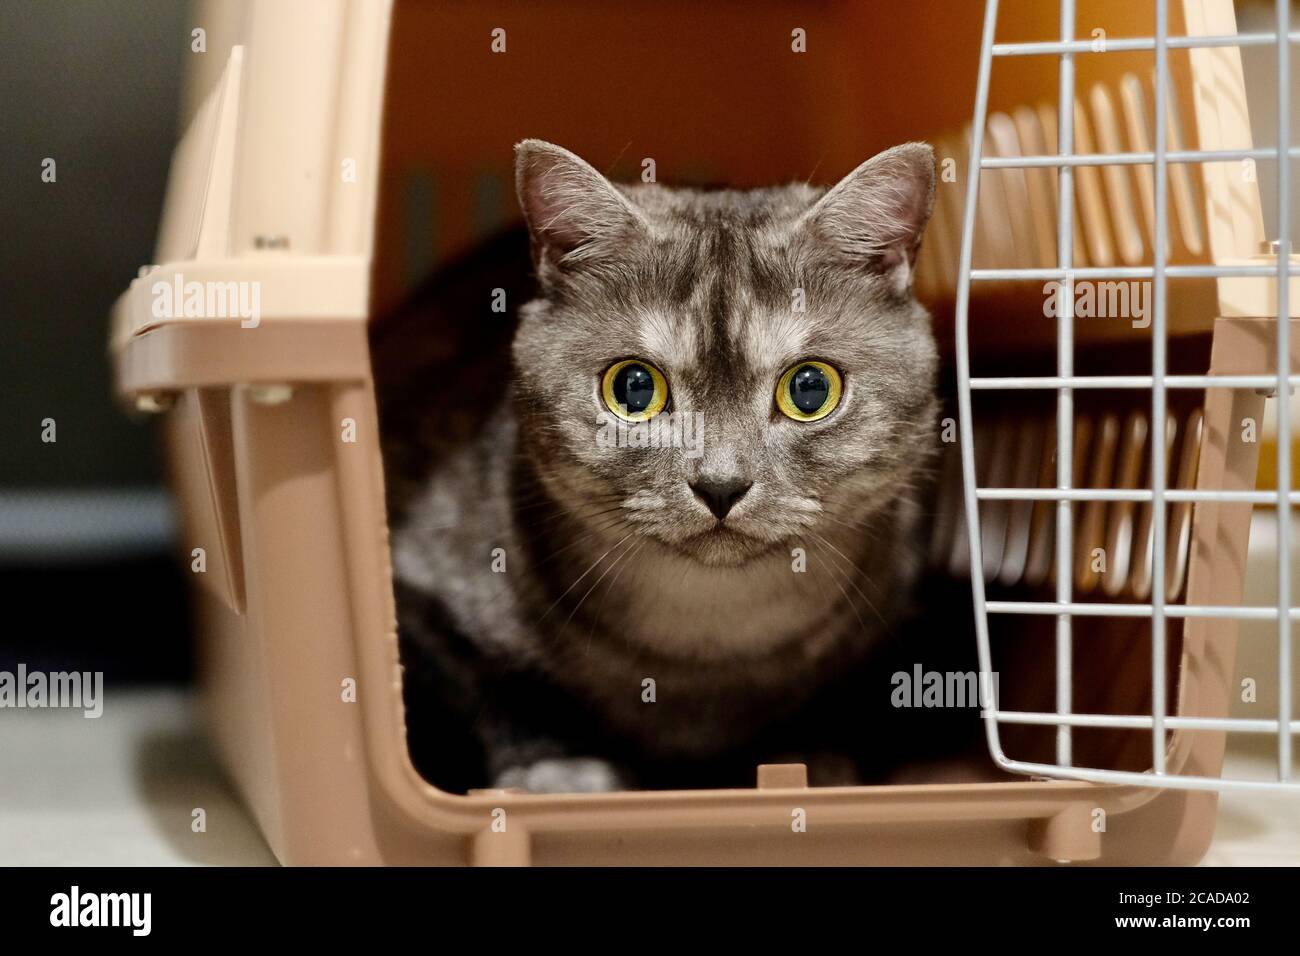 Nahaufnahme der Vorderseite einer britischen Kurzhaar-Katze in der Luftkiste (Haustierträger). Augen weit geöffnet, Blick auf die Kamera. Hintergrund verwischen Stockfoto